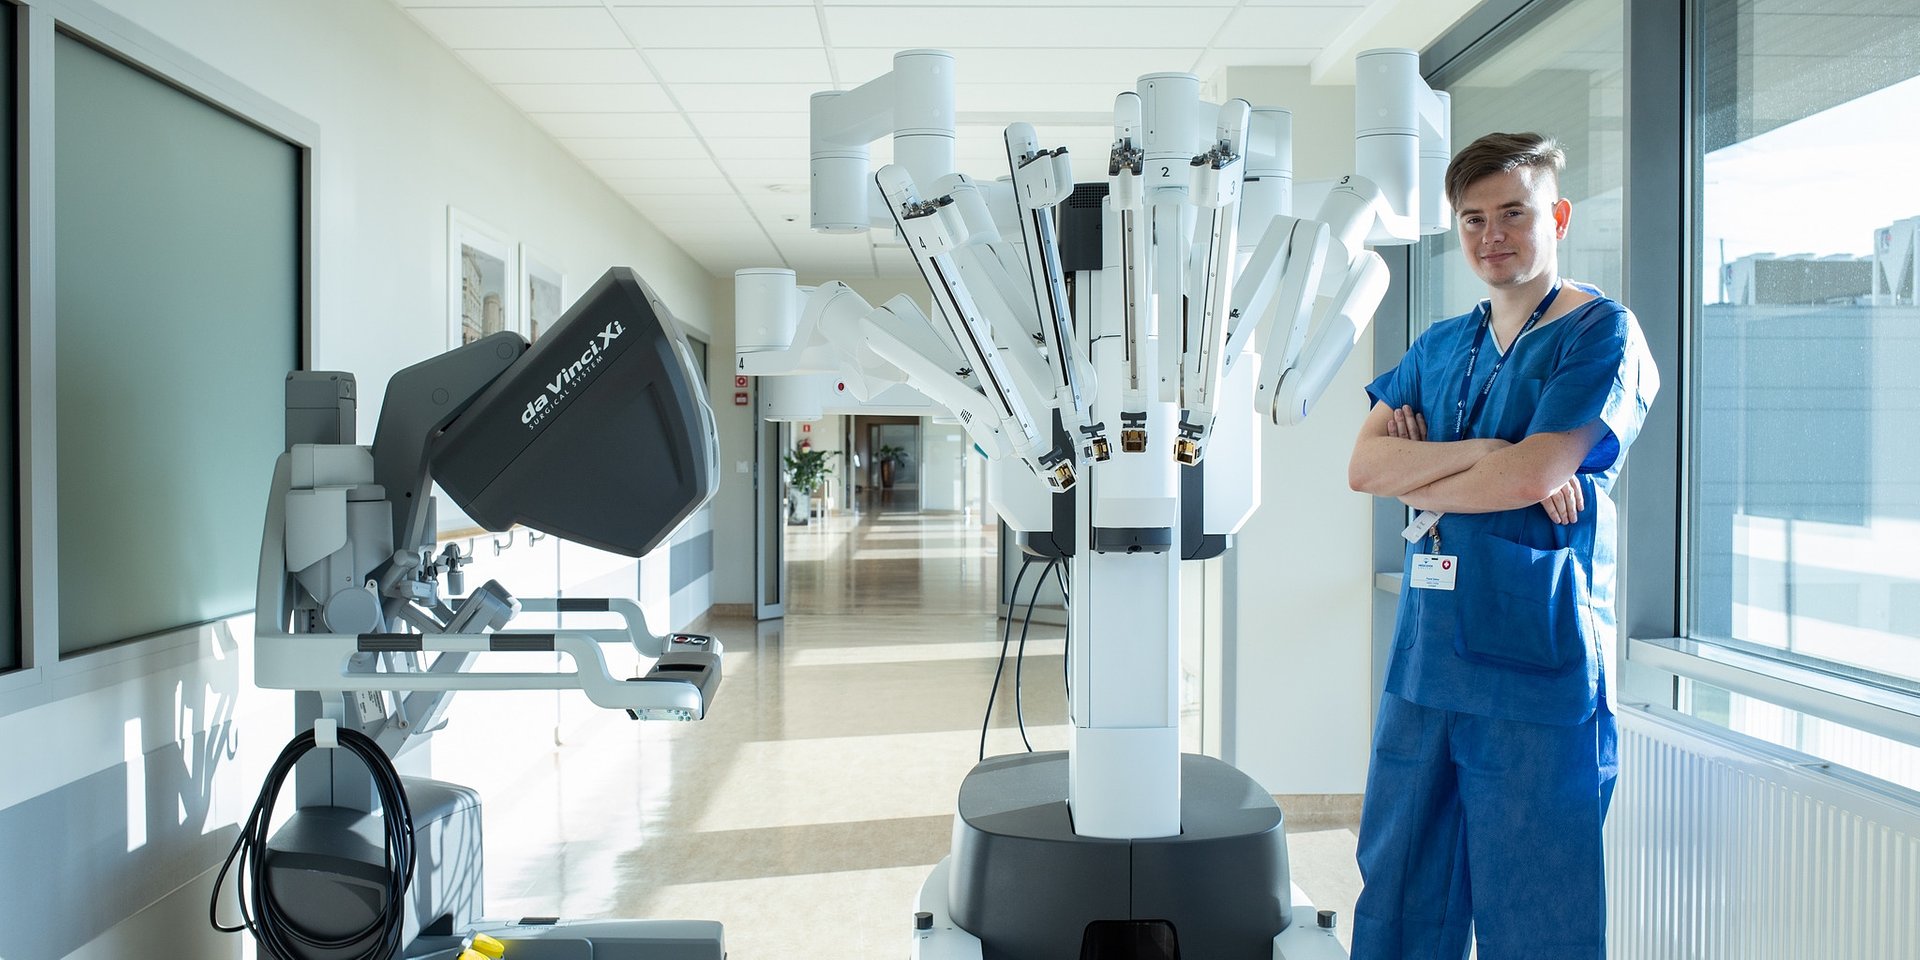 Chirurgia robotyczna skutecznie walczy z rakiem